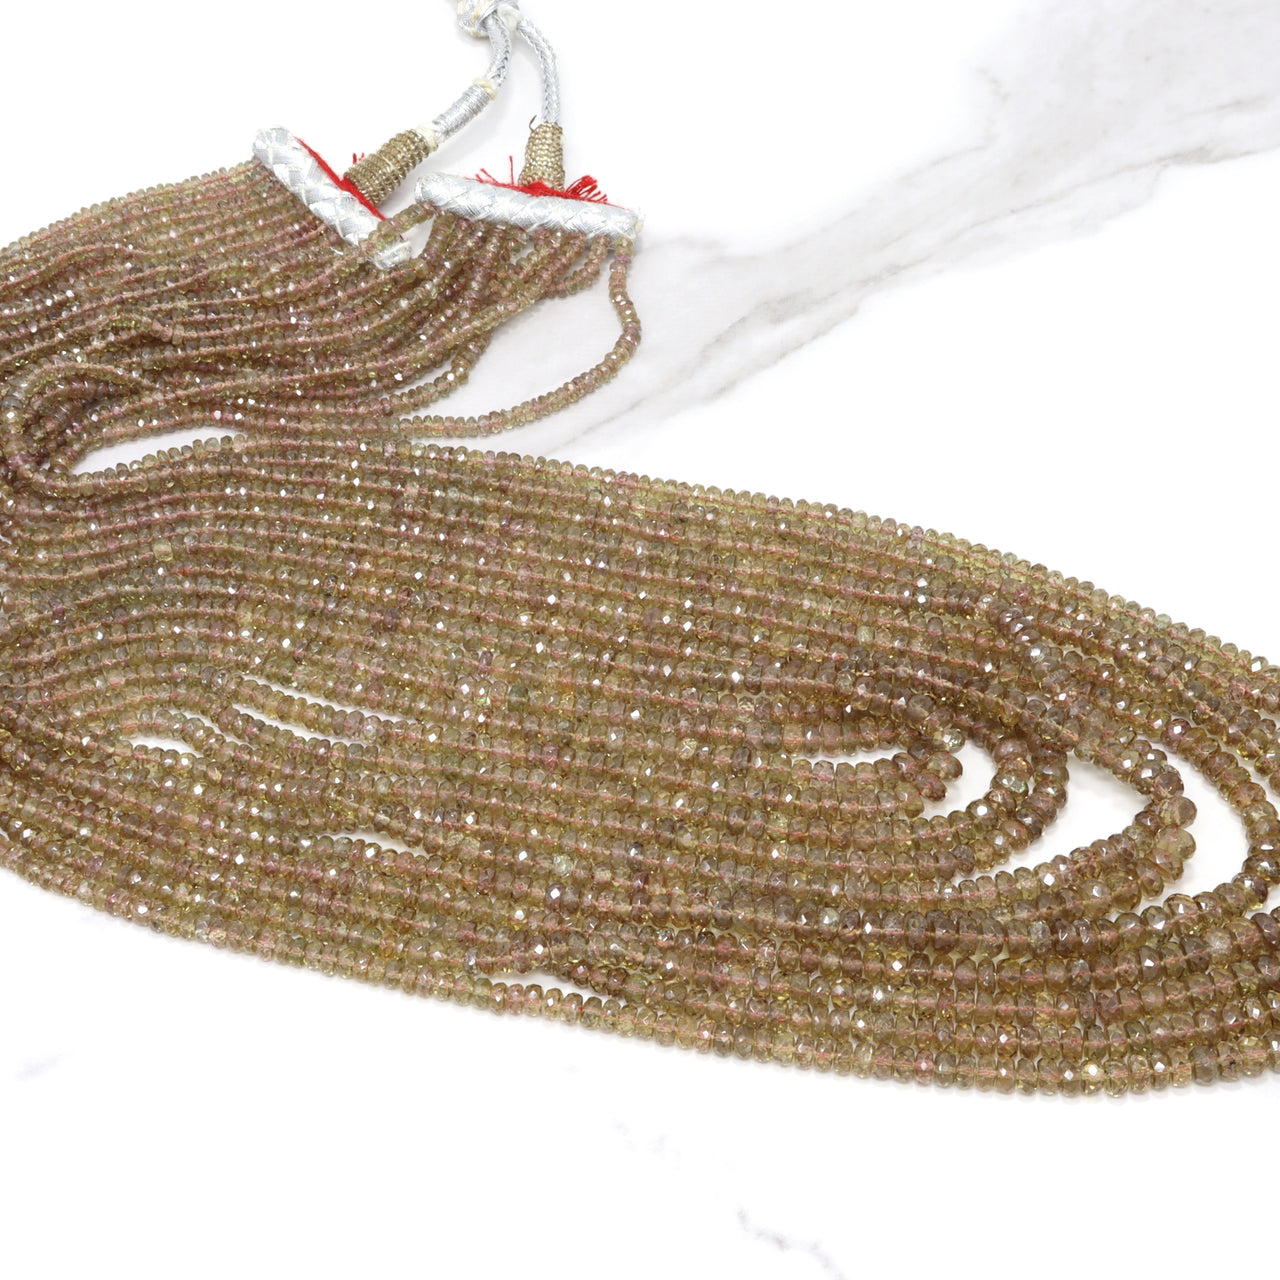 Color Change Garnet 3mm - 5mm Faceted Rondelles 11 Strand Bead Necklace